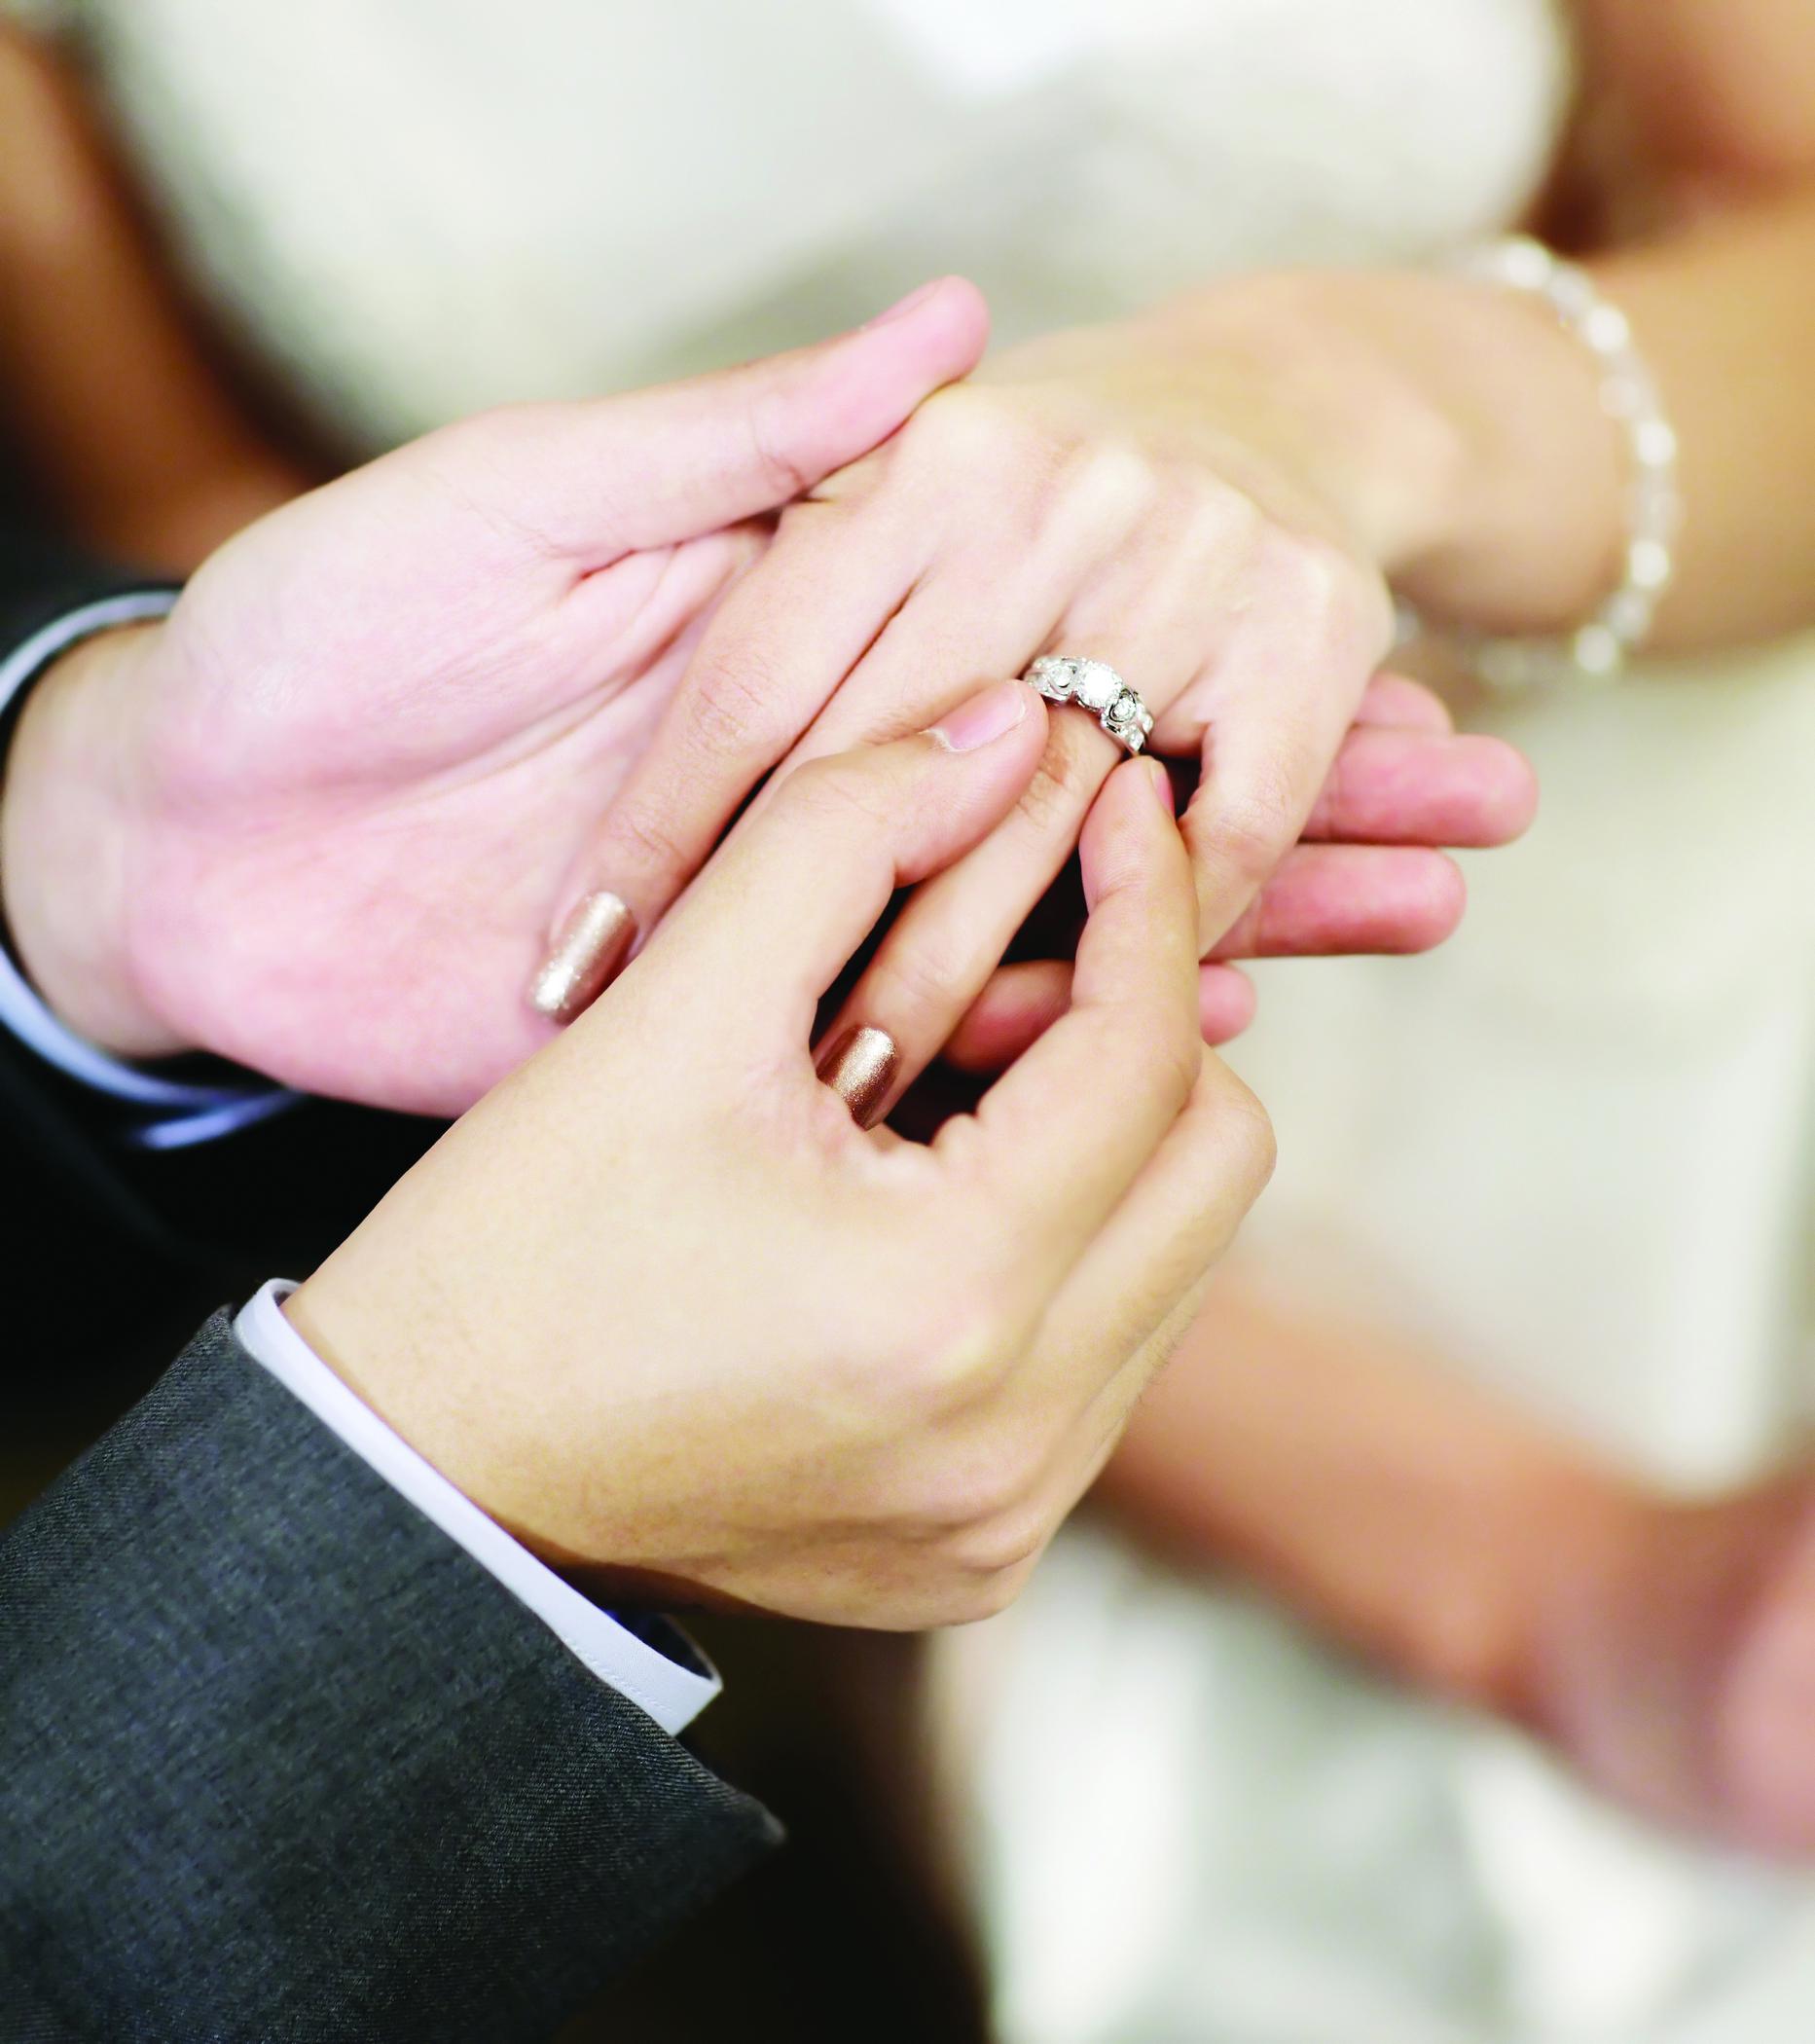 Предложения замужества. Обручальные кольца на руках. Обручальное кольцо на пальце. Красивые обручальные кольца на руках. Свадебные кольца на пальцах.